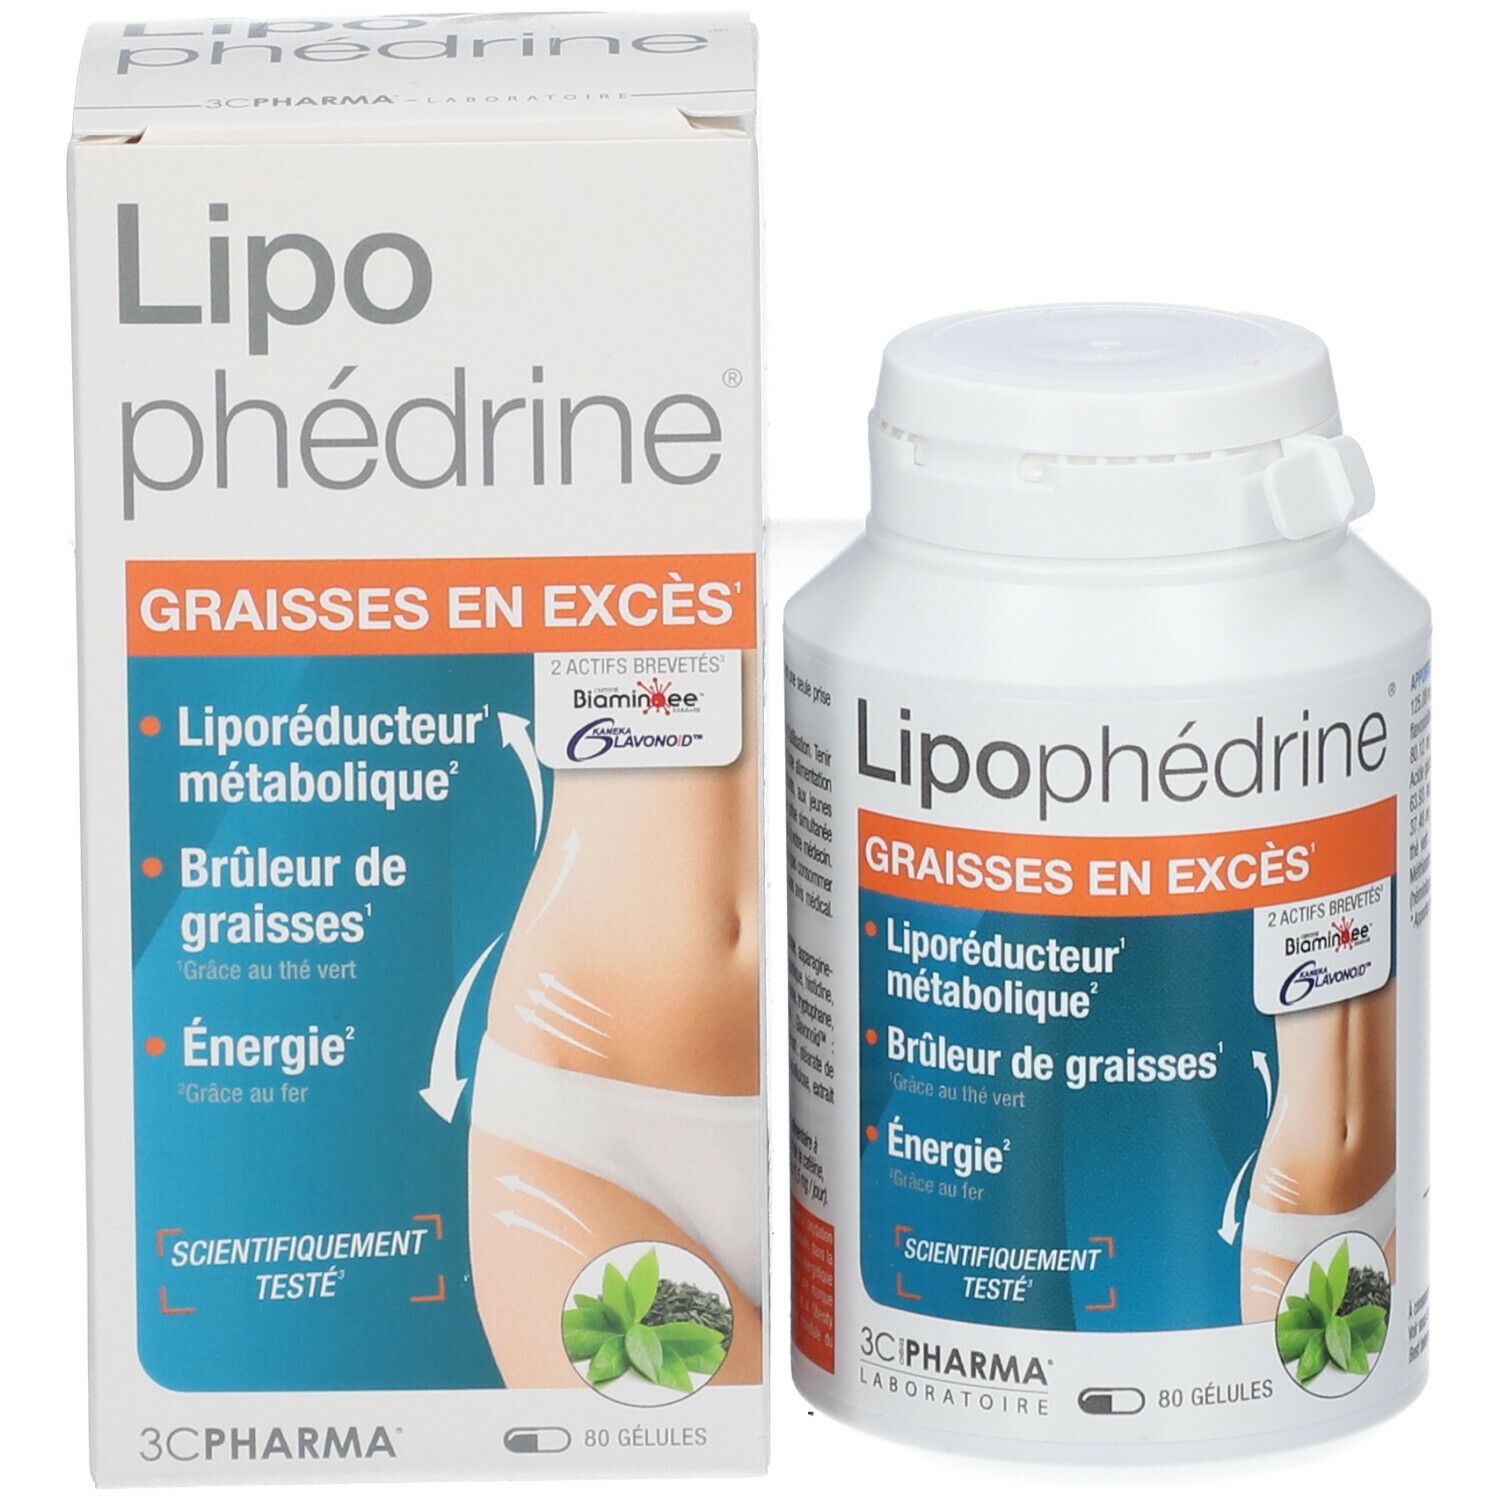 Les 3 Chênes Pharma Lipophédrine®